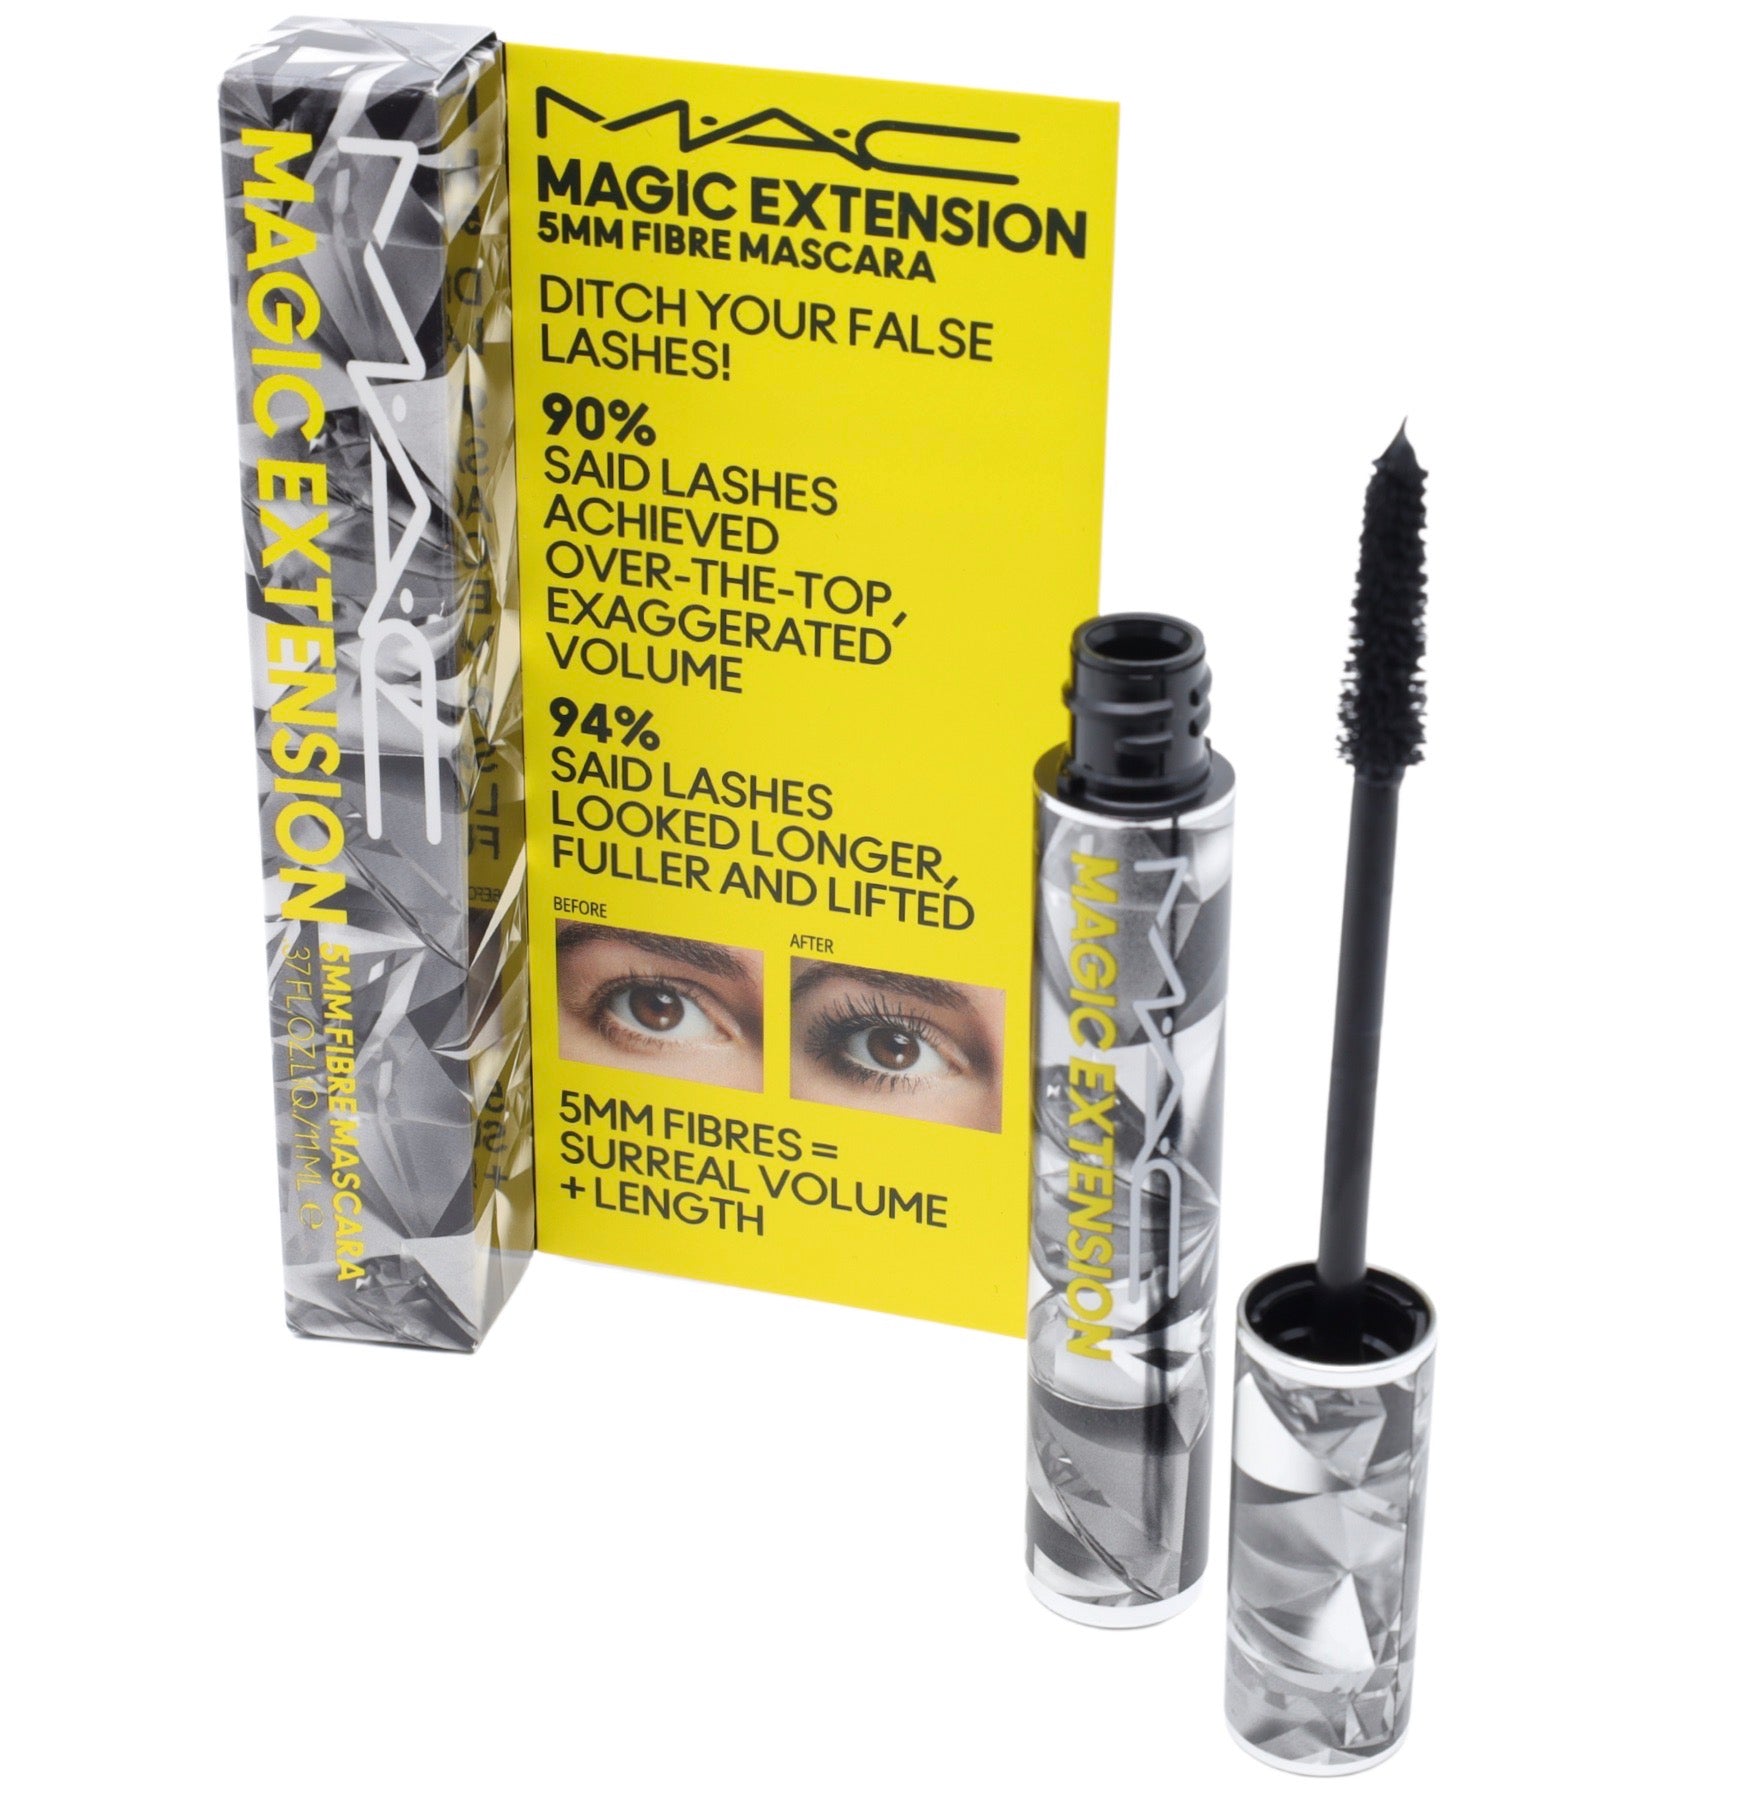 Magic Extension 5mm Fibre Mascara by MAC